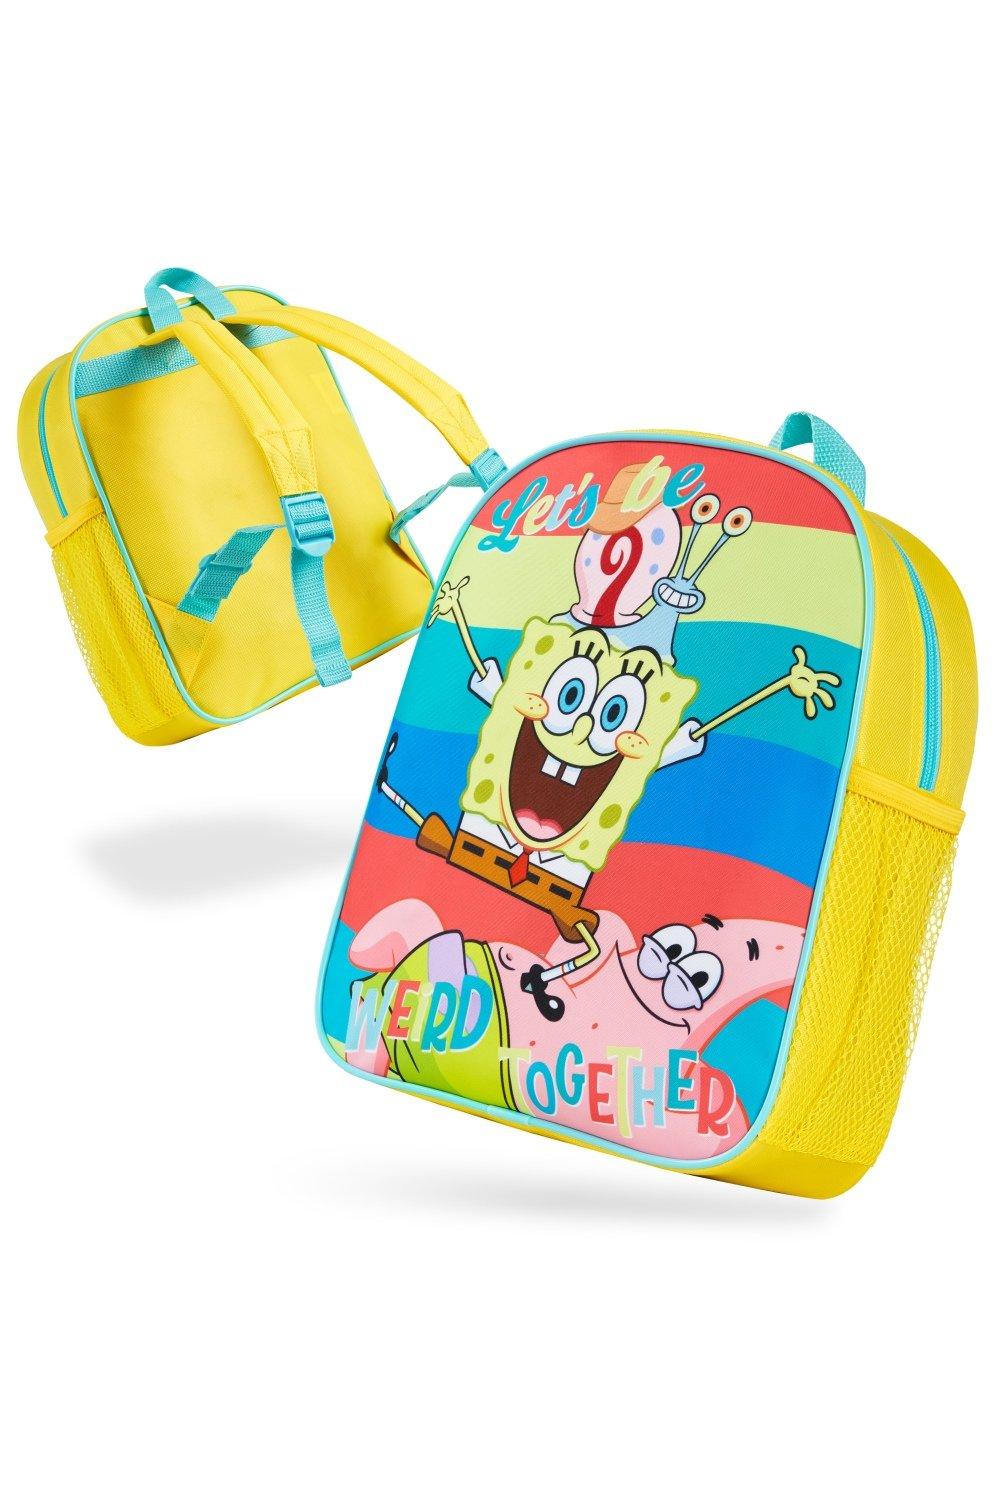 Детский рюкзак «Губка Боб Квадратные Штаны» SpongeBob SquarePants, мультиколор толстовка губка боб spongebob 32